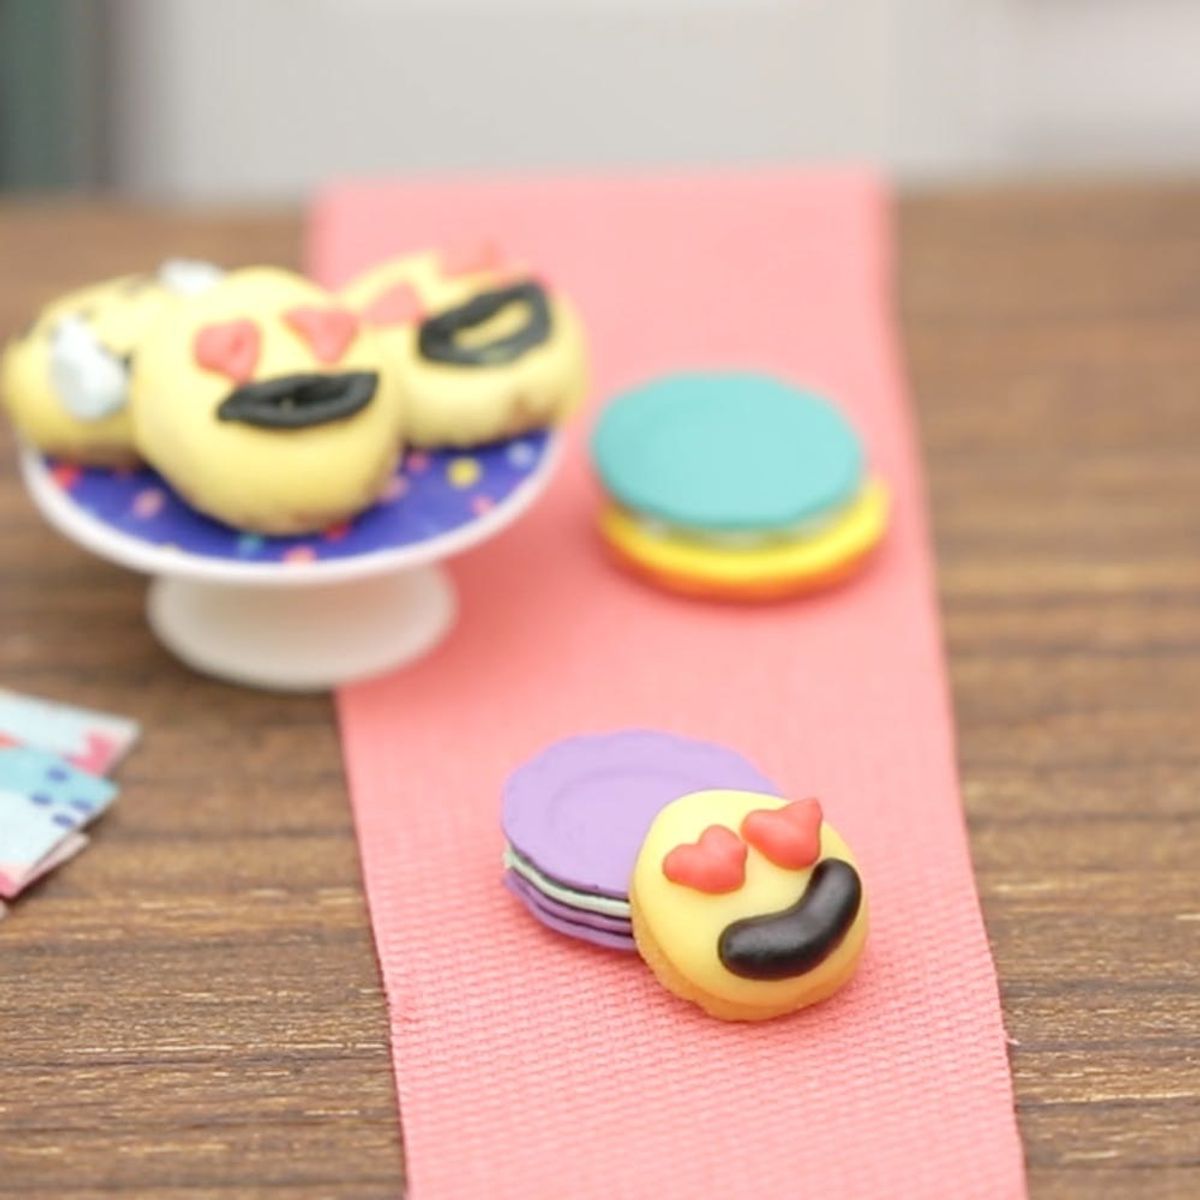 Make It Mini: How to Bake Teeny Tiny Emoji Cookies